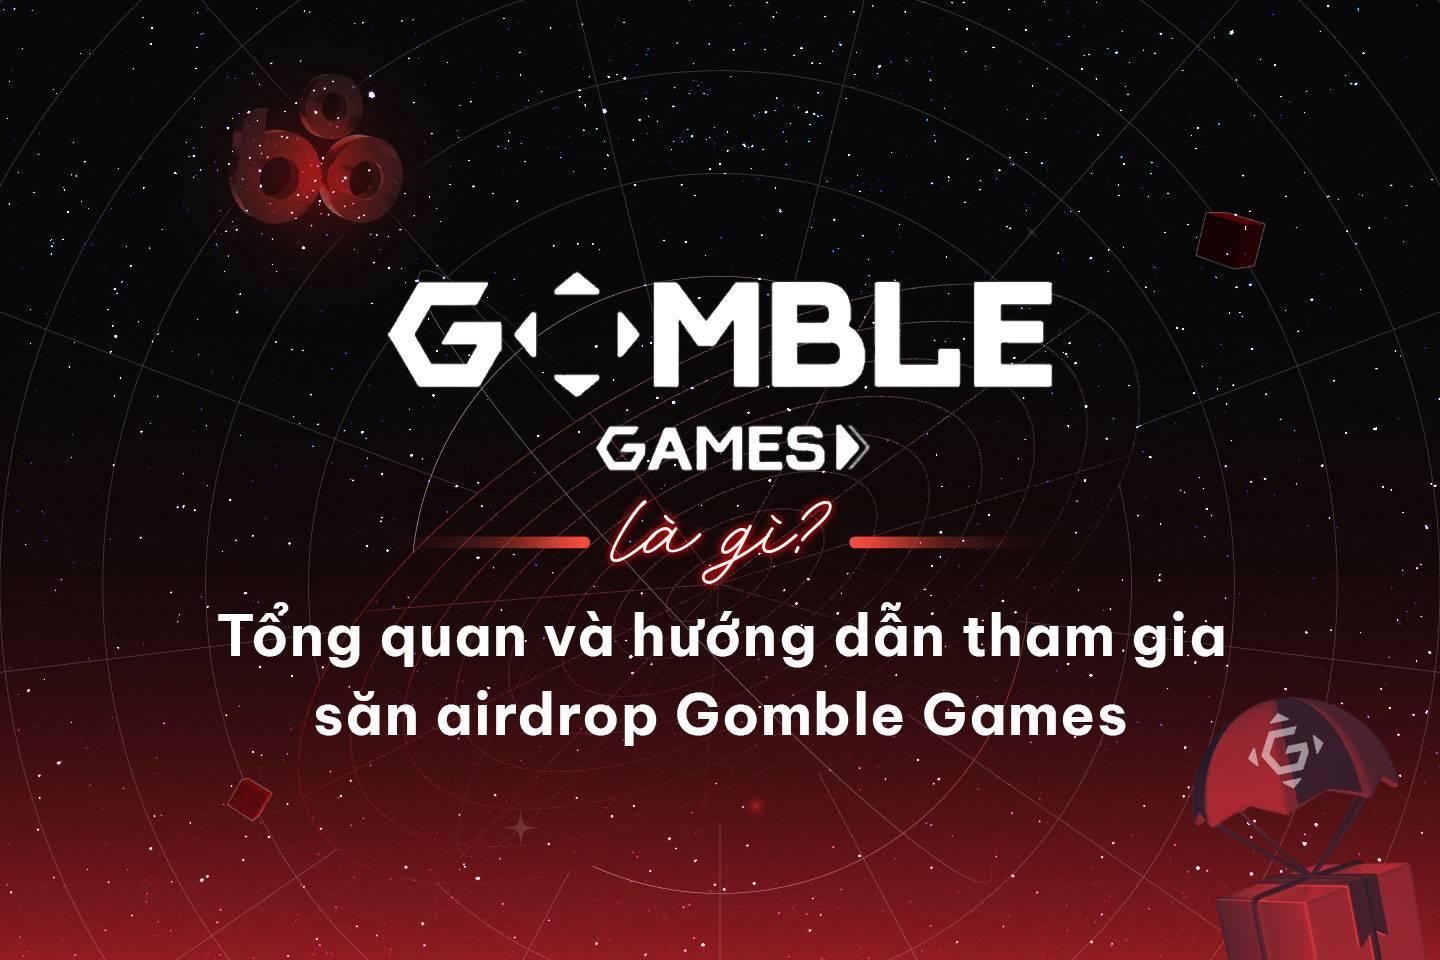 gomble-games-la-gi-tong-quan-va-huong-dan-tham-gia-san-airdrop-gomble-games